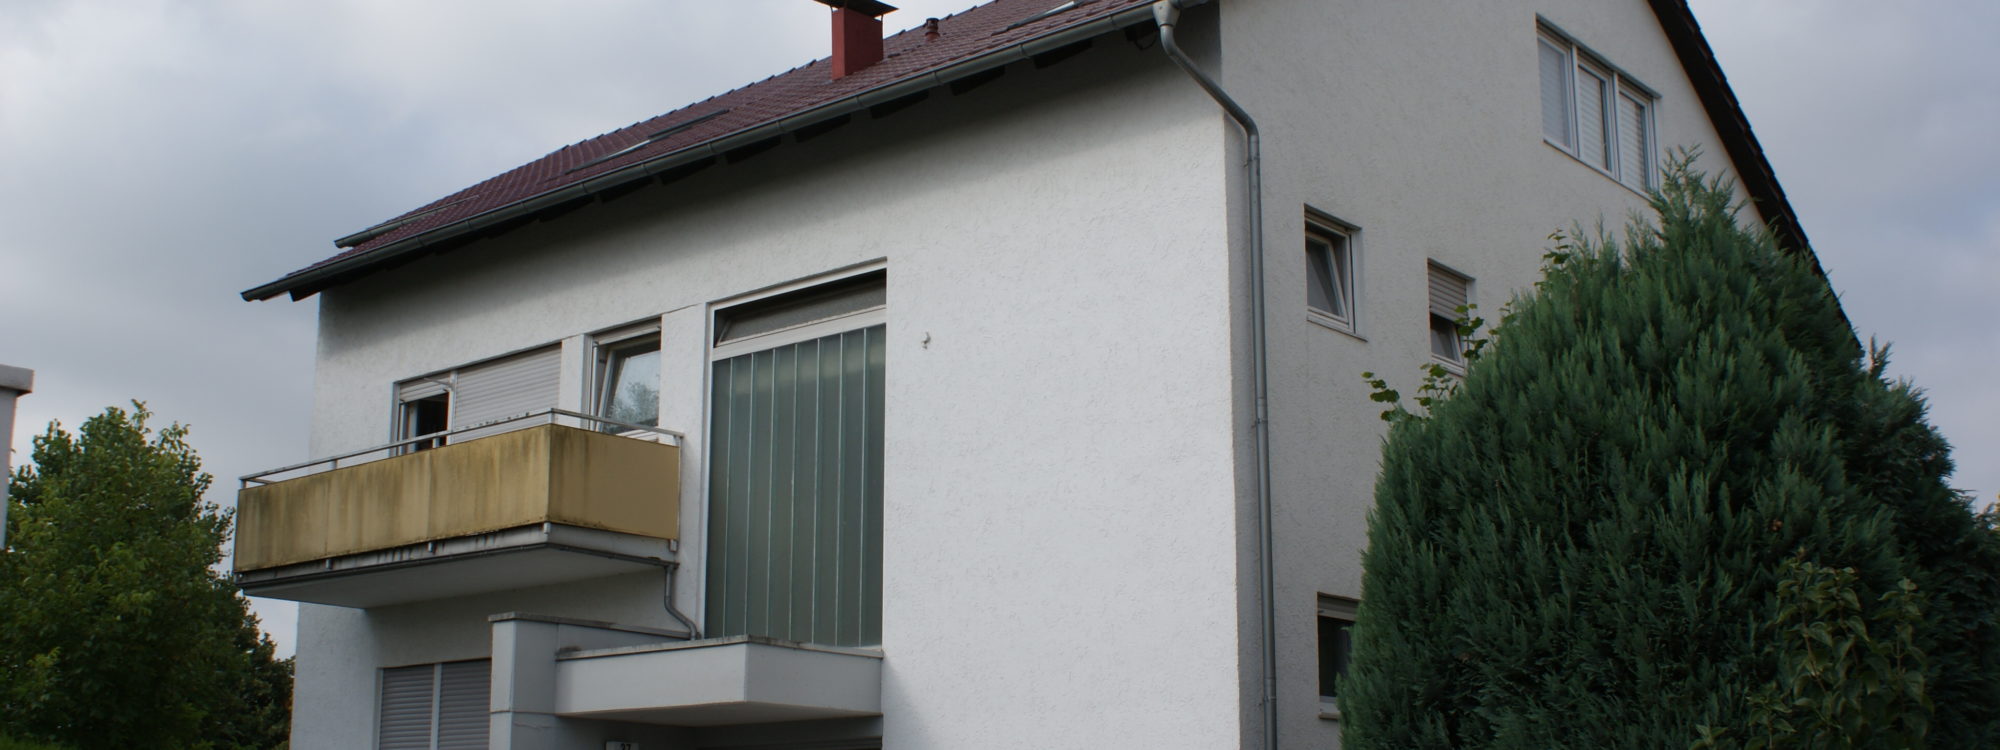 Vermietet ! – Geräumige Erdgeschosswohnung mit Balkon